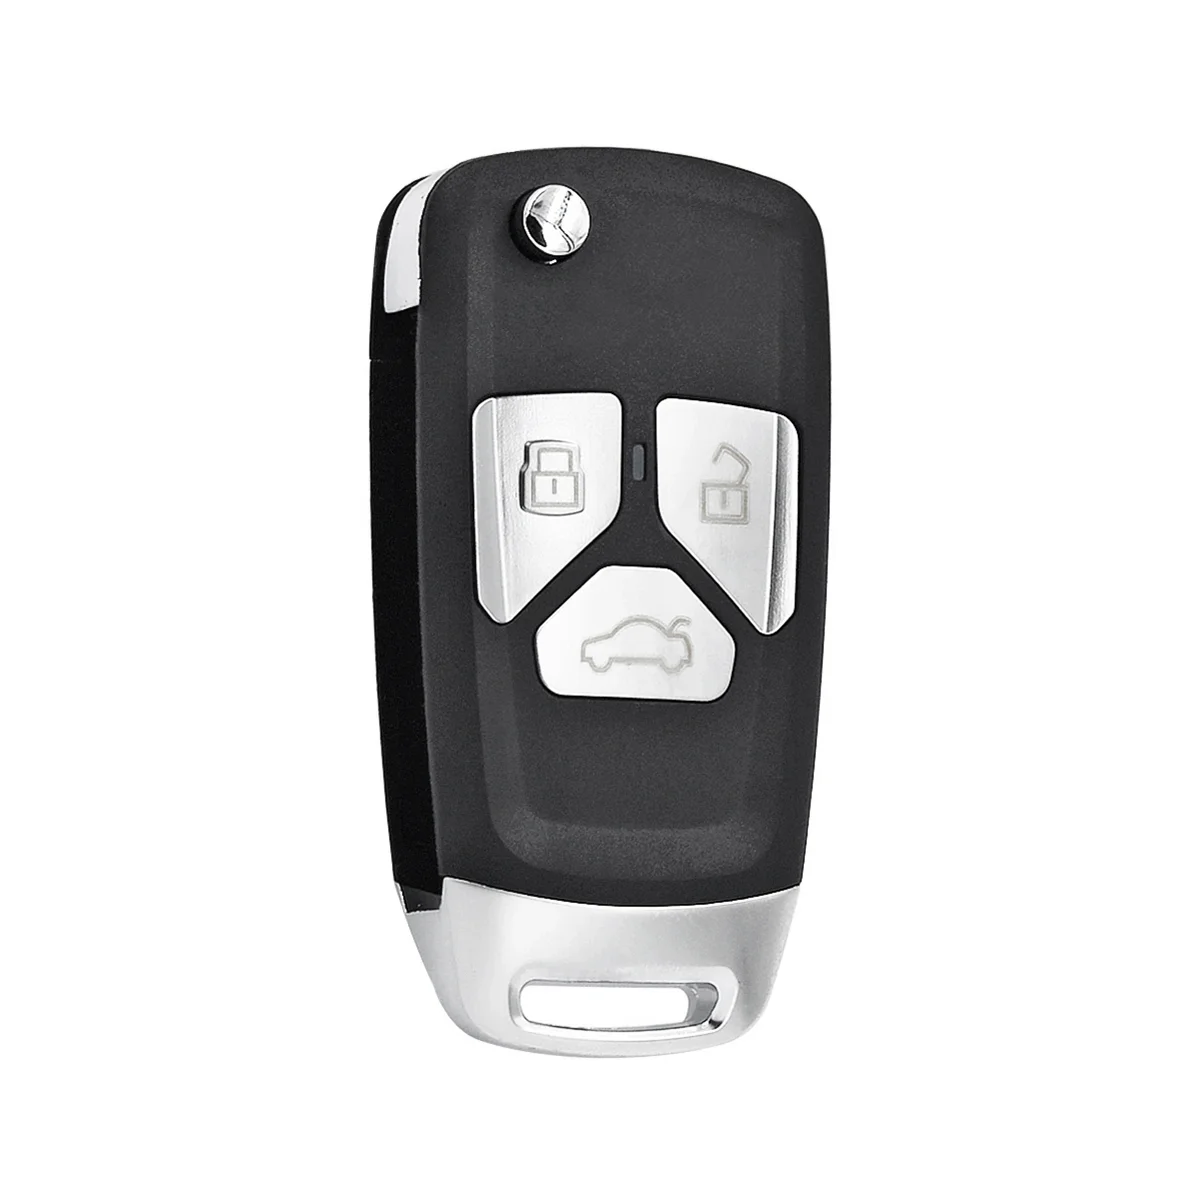 

Автомобильный пульт дистанционного управления KEYDIY с кнопками NB-Series 3 и чипами для Audi Style for KD900/Φ KD MINI/ URG200, программатор A